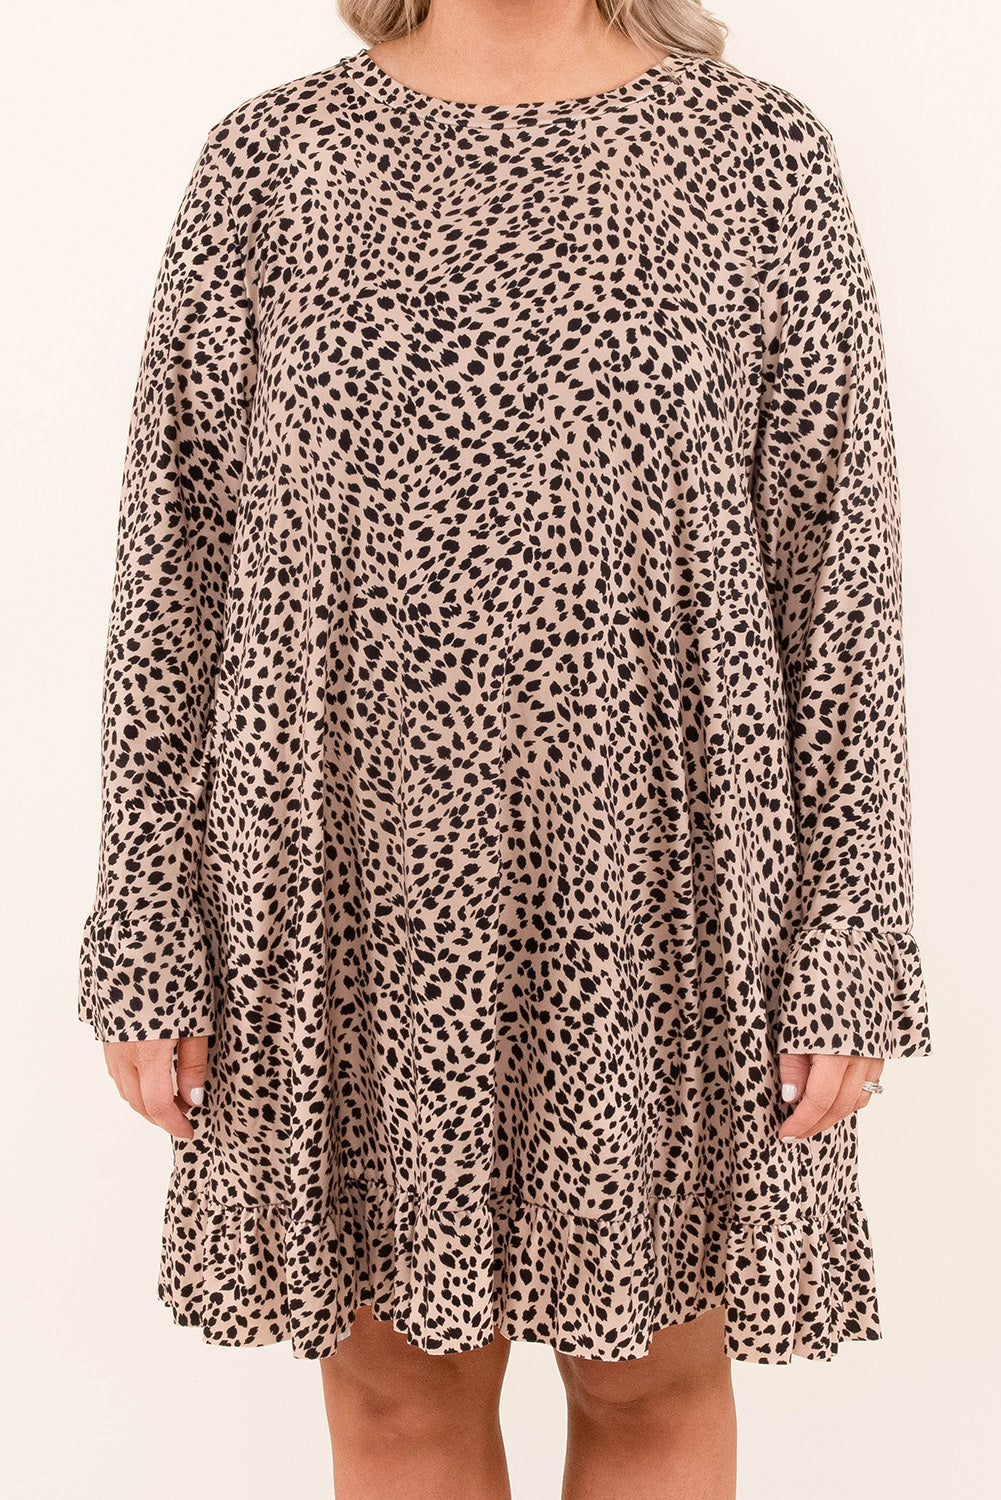 Leopard mini haljina dugih rukava velike veličine s volanima